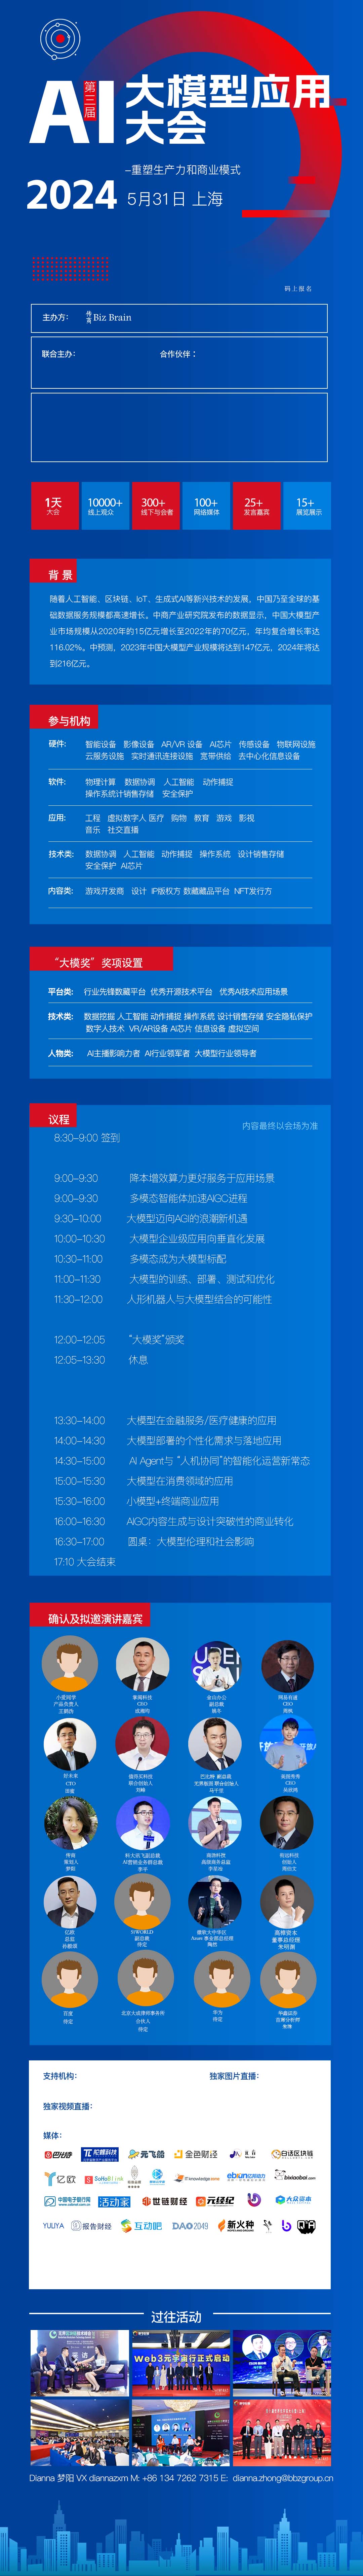 AI大模型应用大会2024/5/31上海